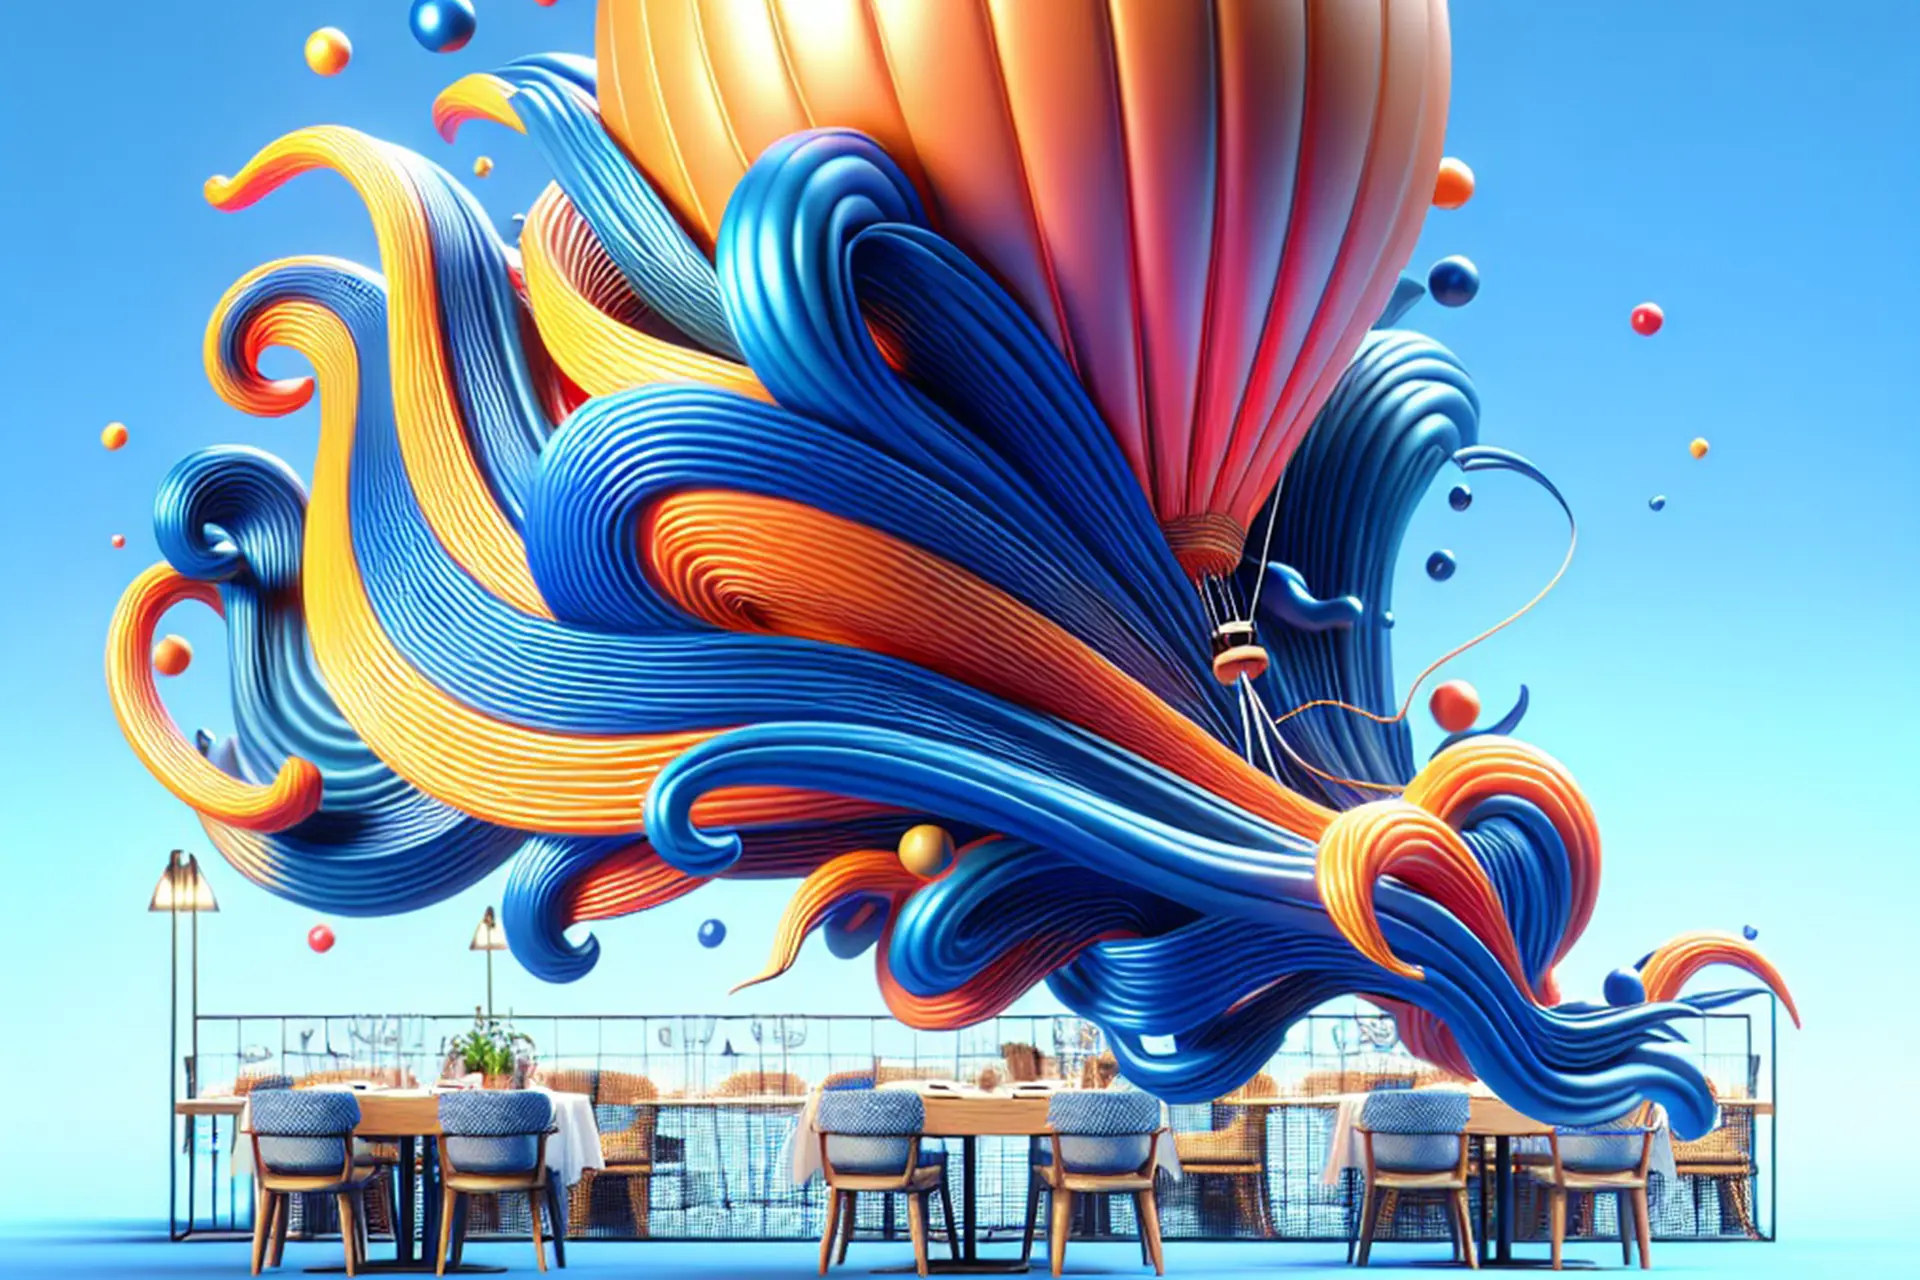 Mesa de restaurante moderna com decoração artística de balões e ondas coloridas